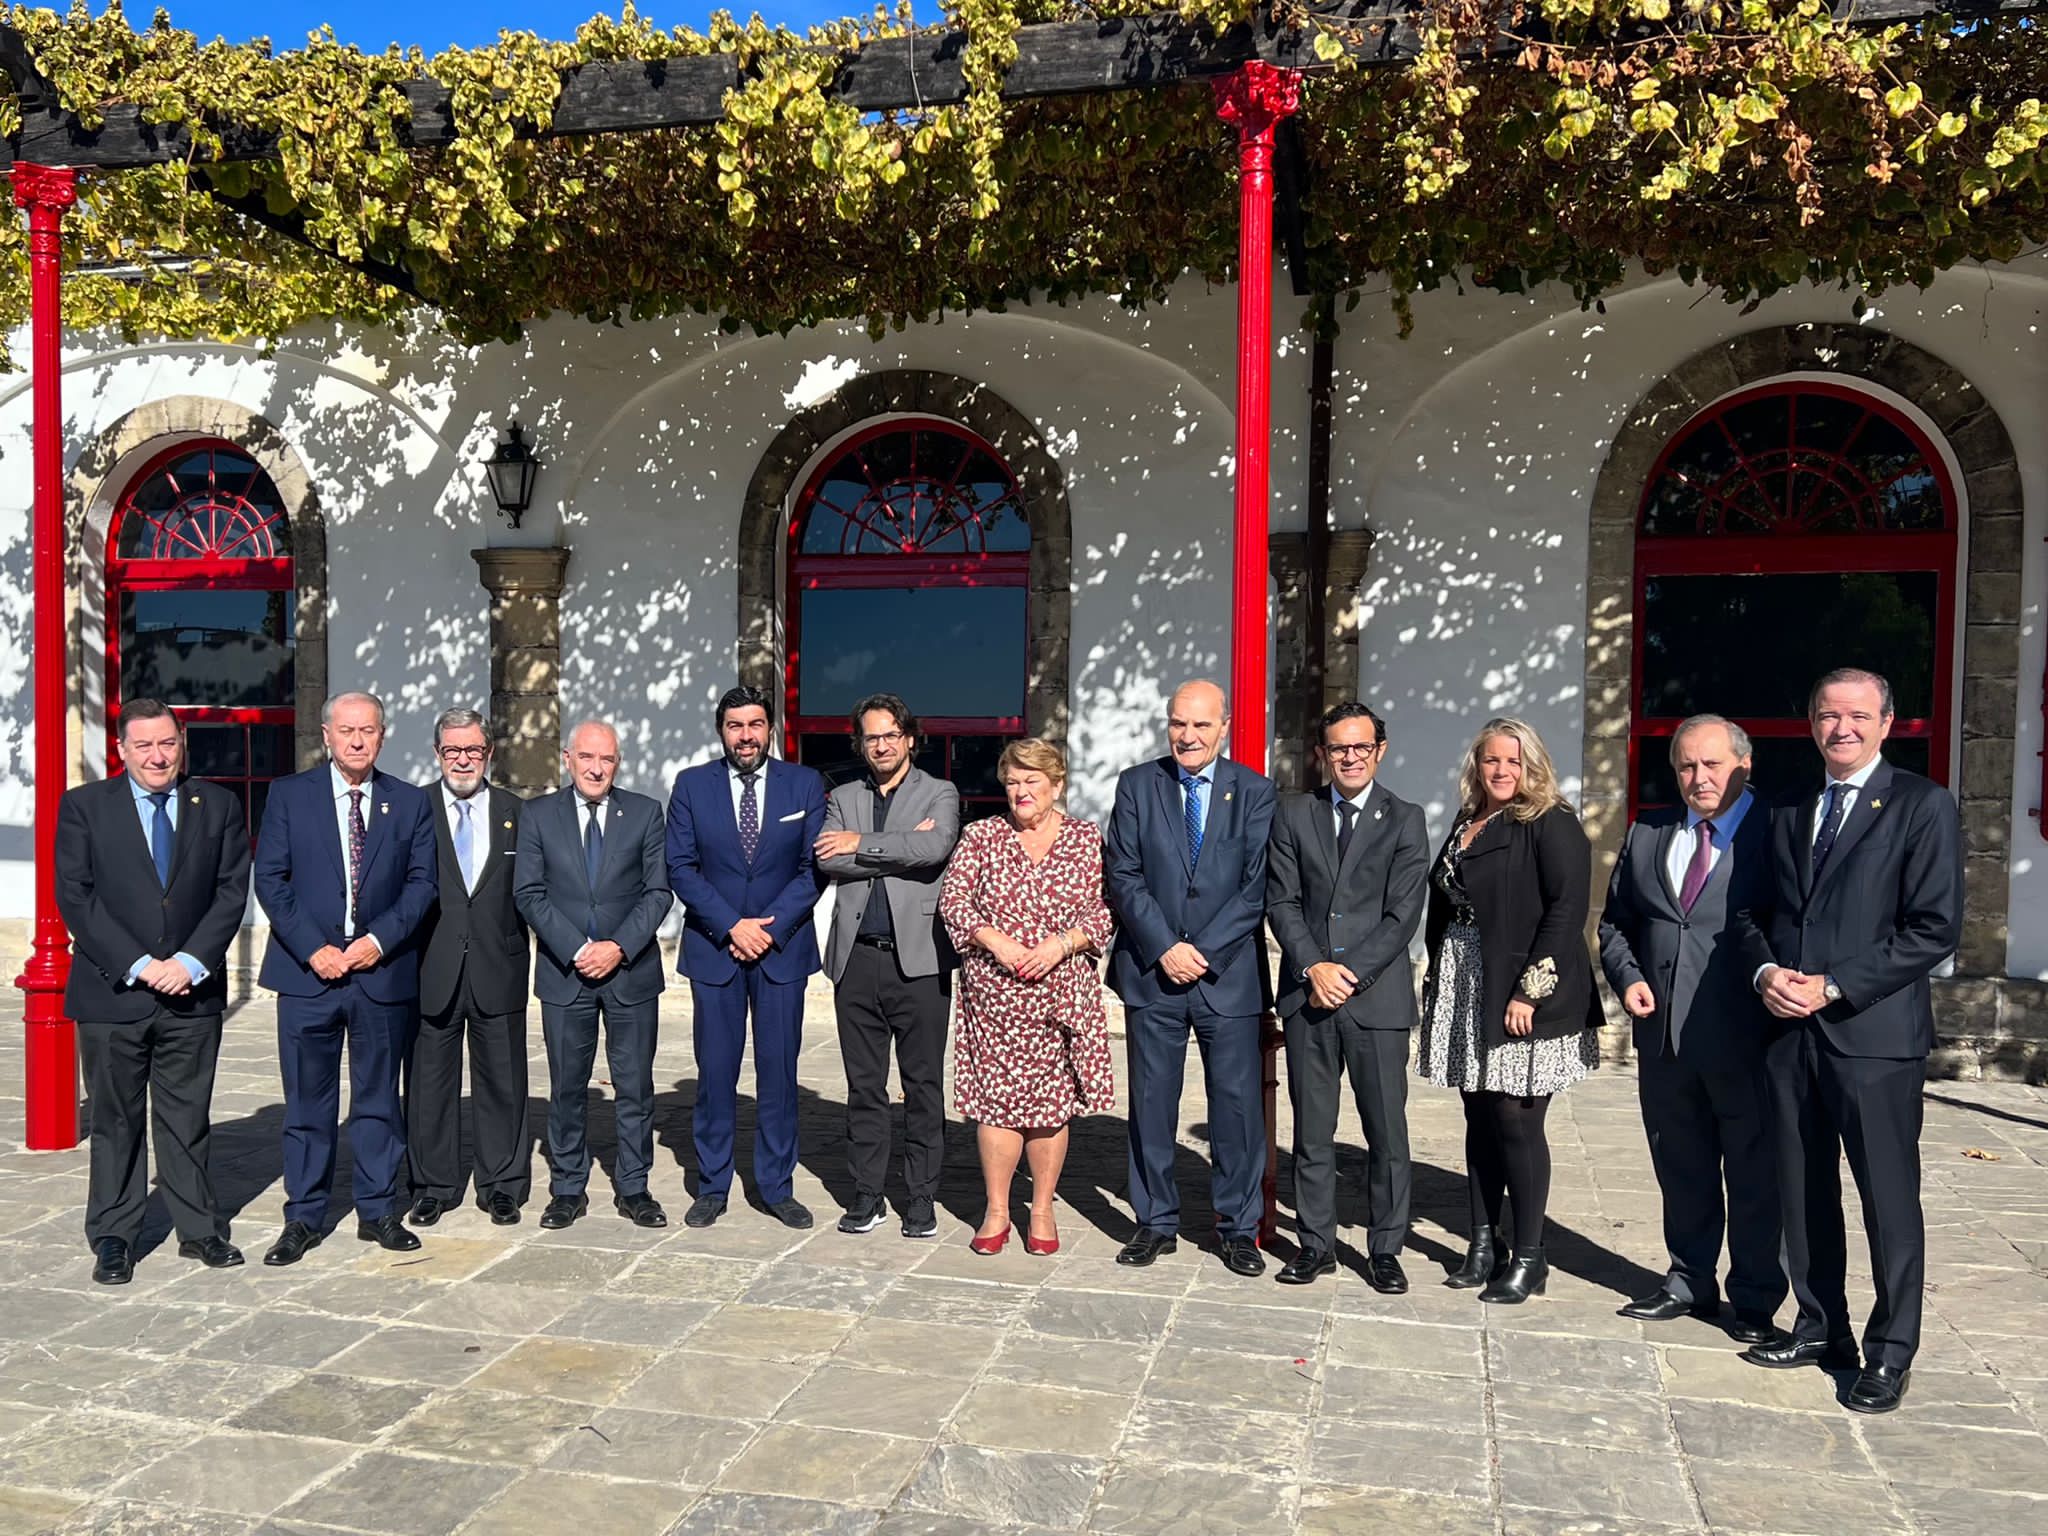 El prometido Plan de Arte Sacro Andaluz ya tiene cinco ideas desde los consejos cofrades reunidos en Jerez. Los presidentes en González Byass.